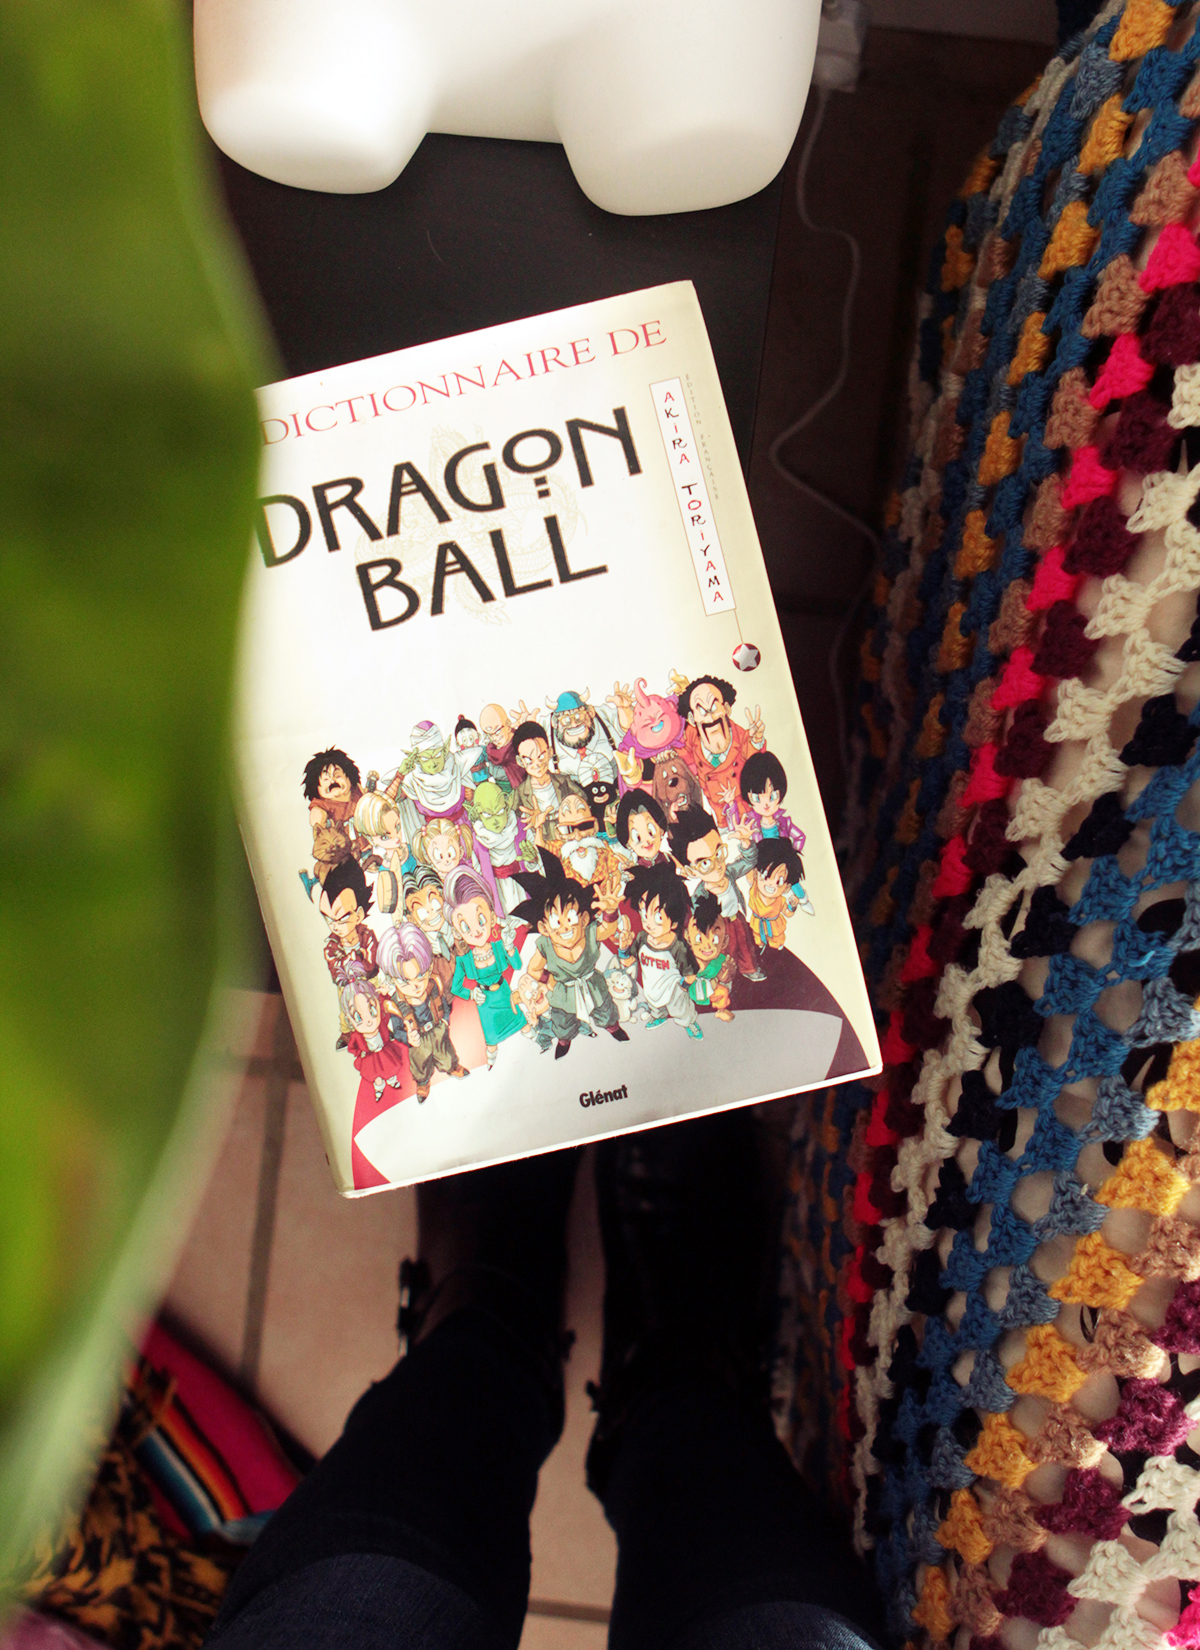 dragon-ball